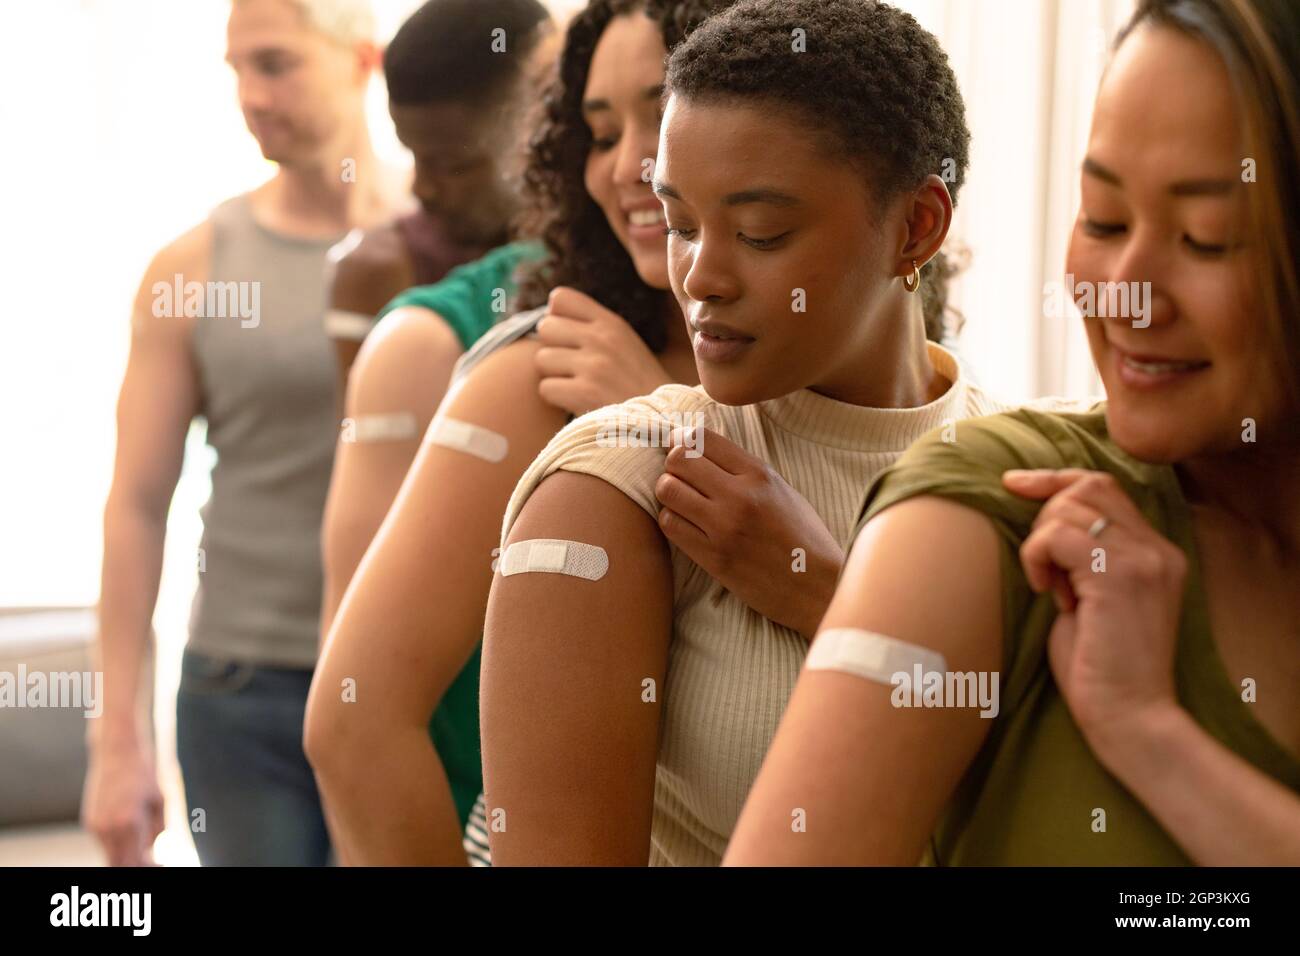 Groupe d'amis féminins et masculins divers montrant des emplâtres après la vaccination Banque D'Images